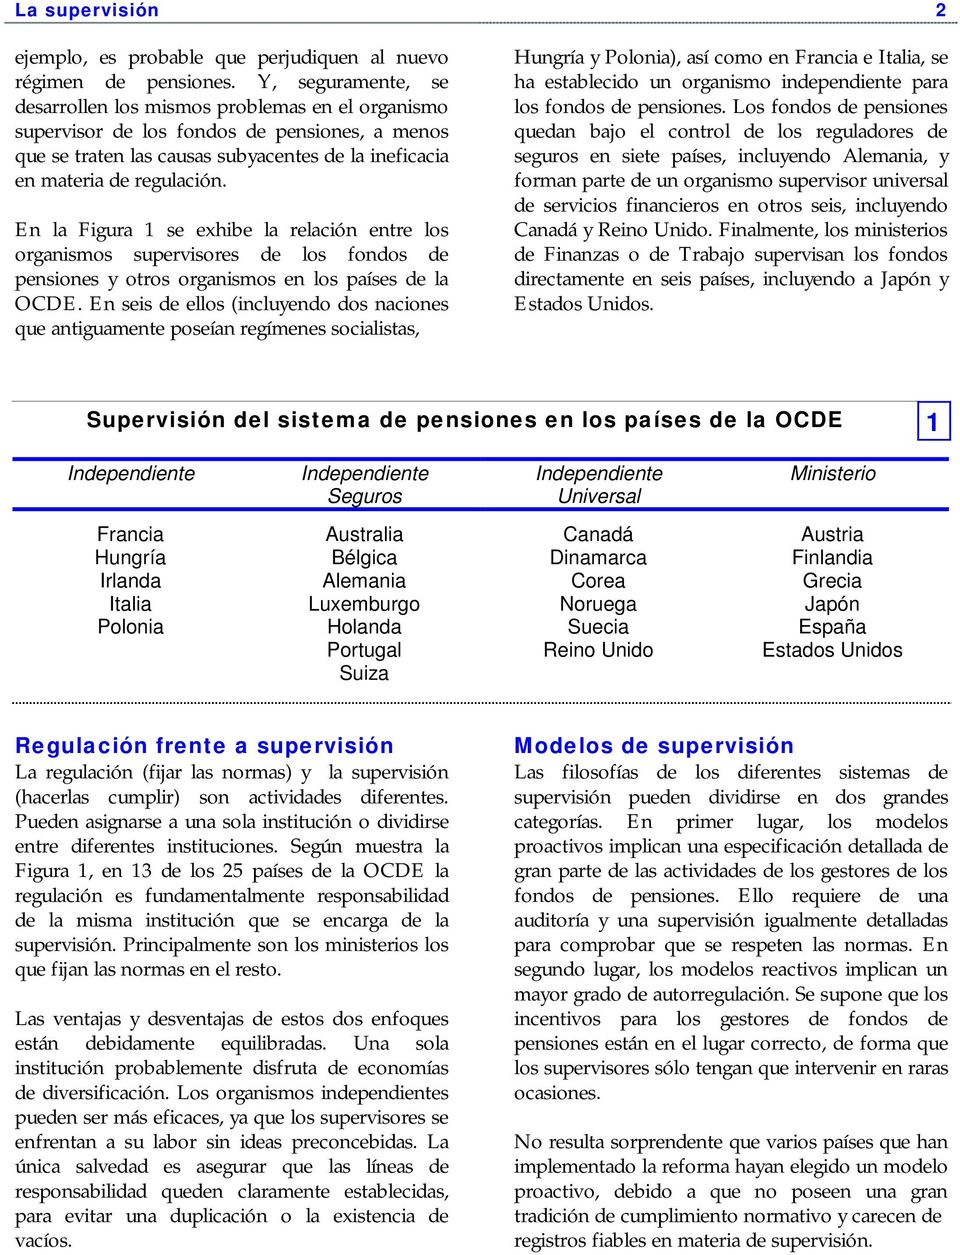 En la Figura 1 se exhibe la relación entre los organismos supervisores de los fondos de pensiones y otros organismos en los países de la OCDE.